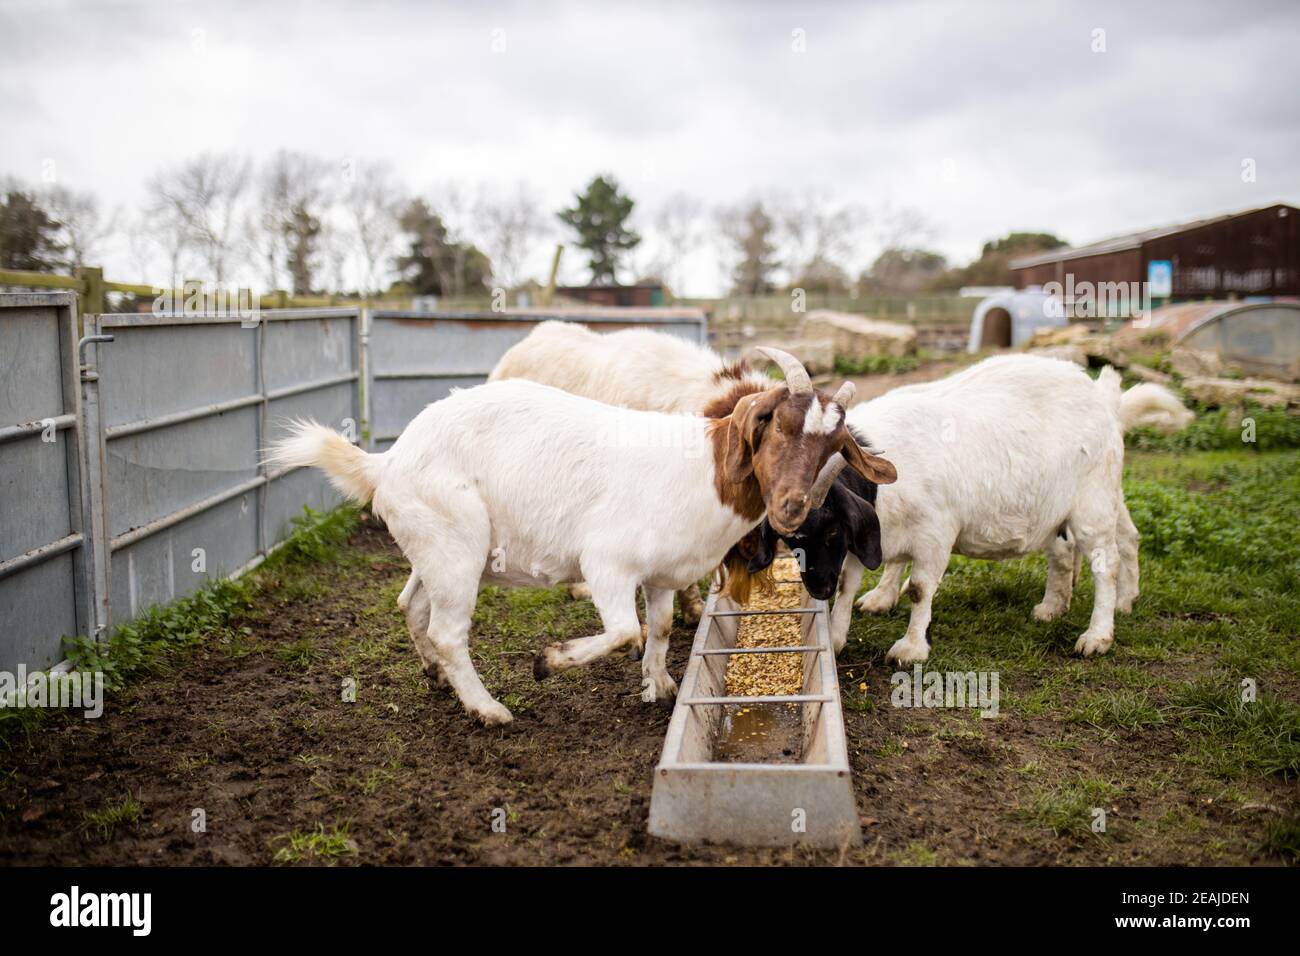 Chèvres blanches et brunes mangeant calmement du grain dans une ferme Banque D'Images